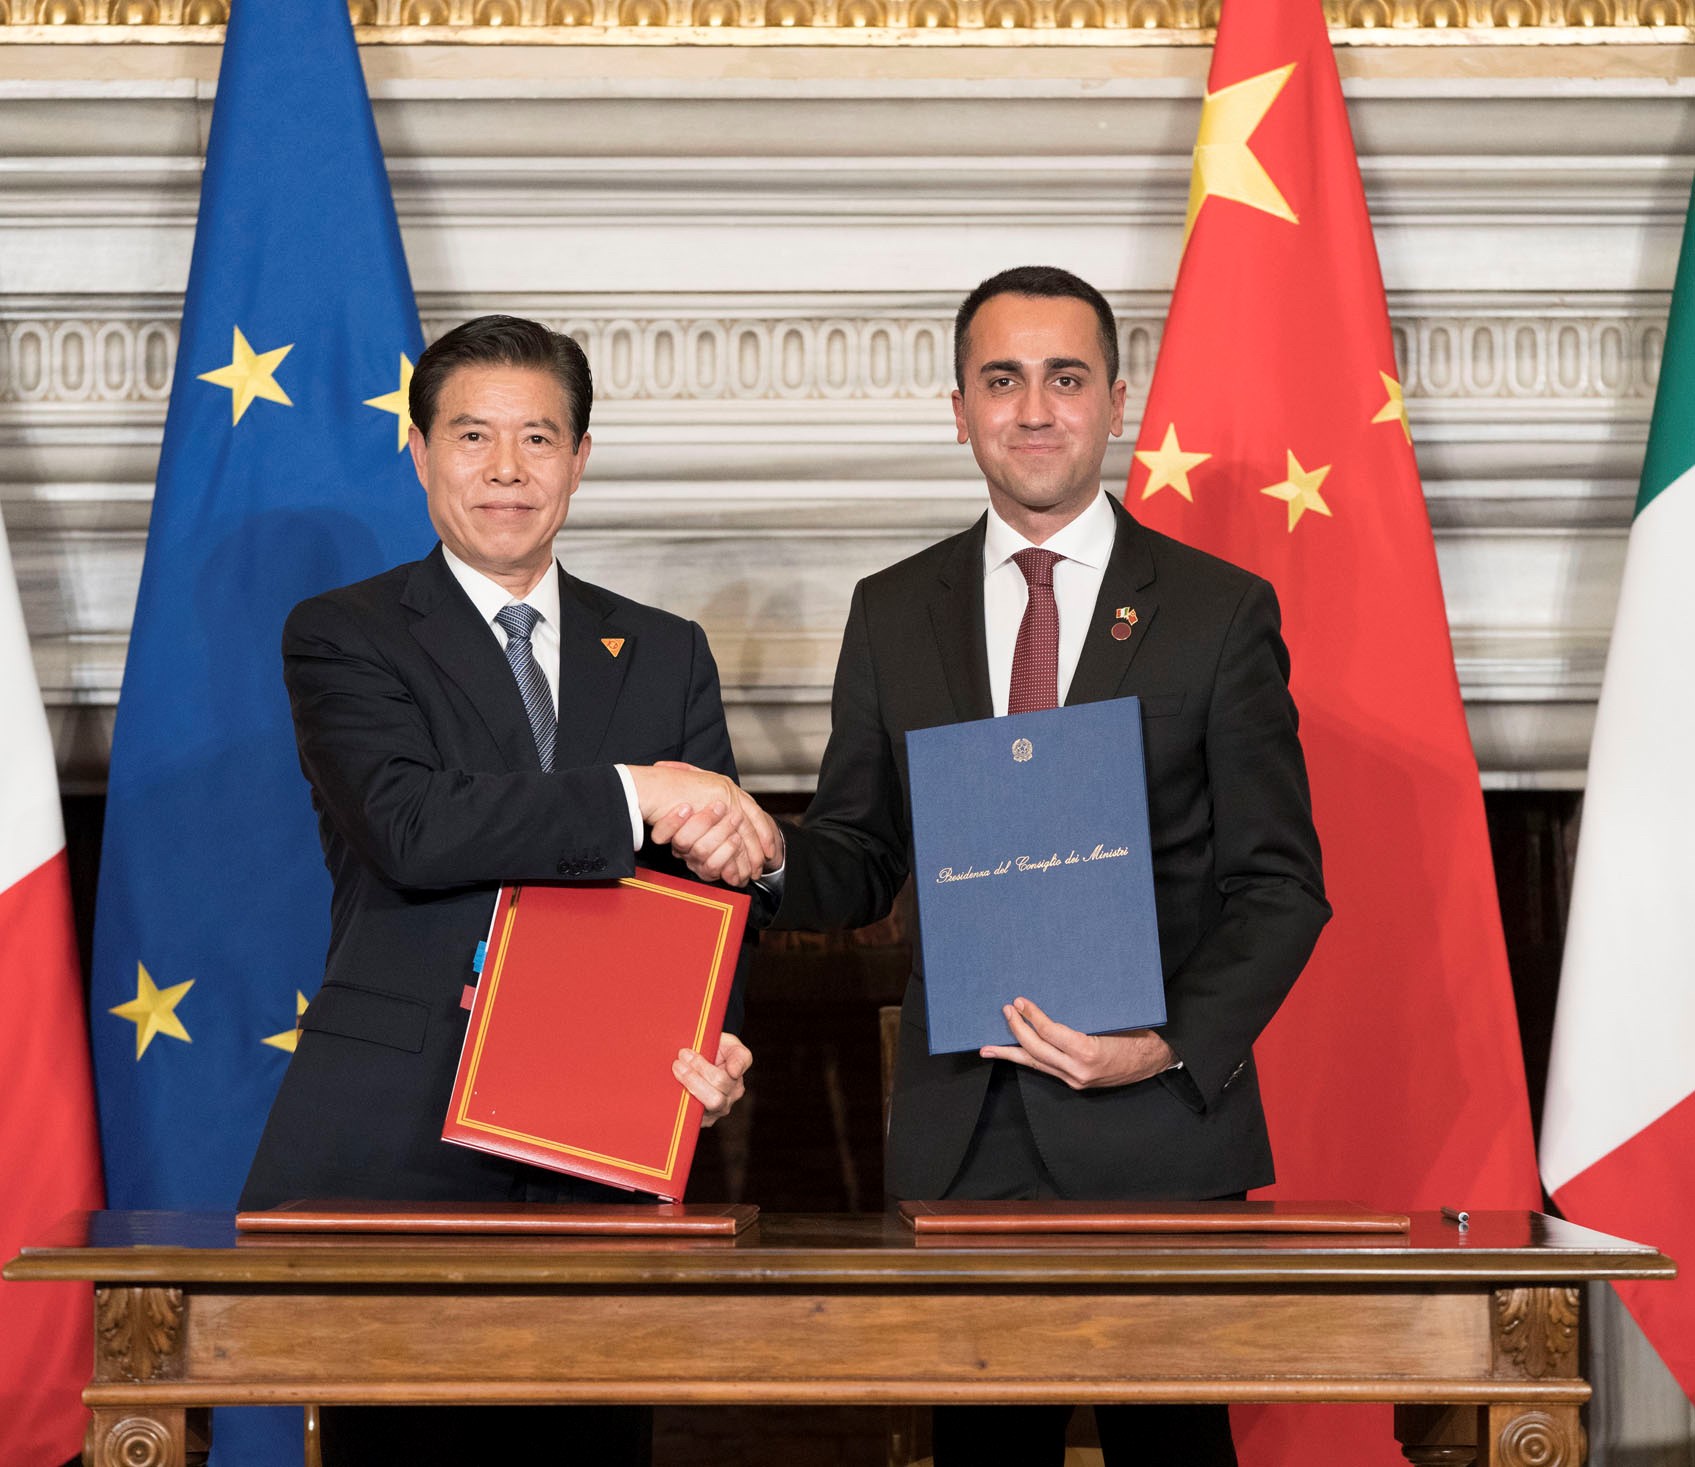 رئيس الوزراء الايطالي جوزيبى كونتى مع الرئيس الصيني سي جين بينغ خلال توقيع "مذكرة التفاهم" الخاصة بانضمام ايطاليا الى مبادرة "طريق الحرير الجديد"